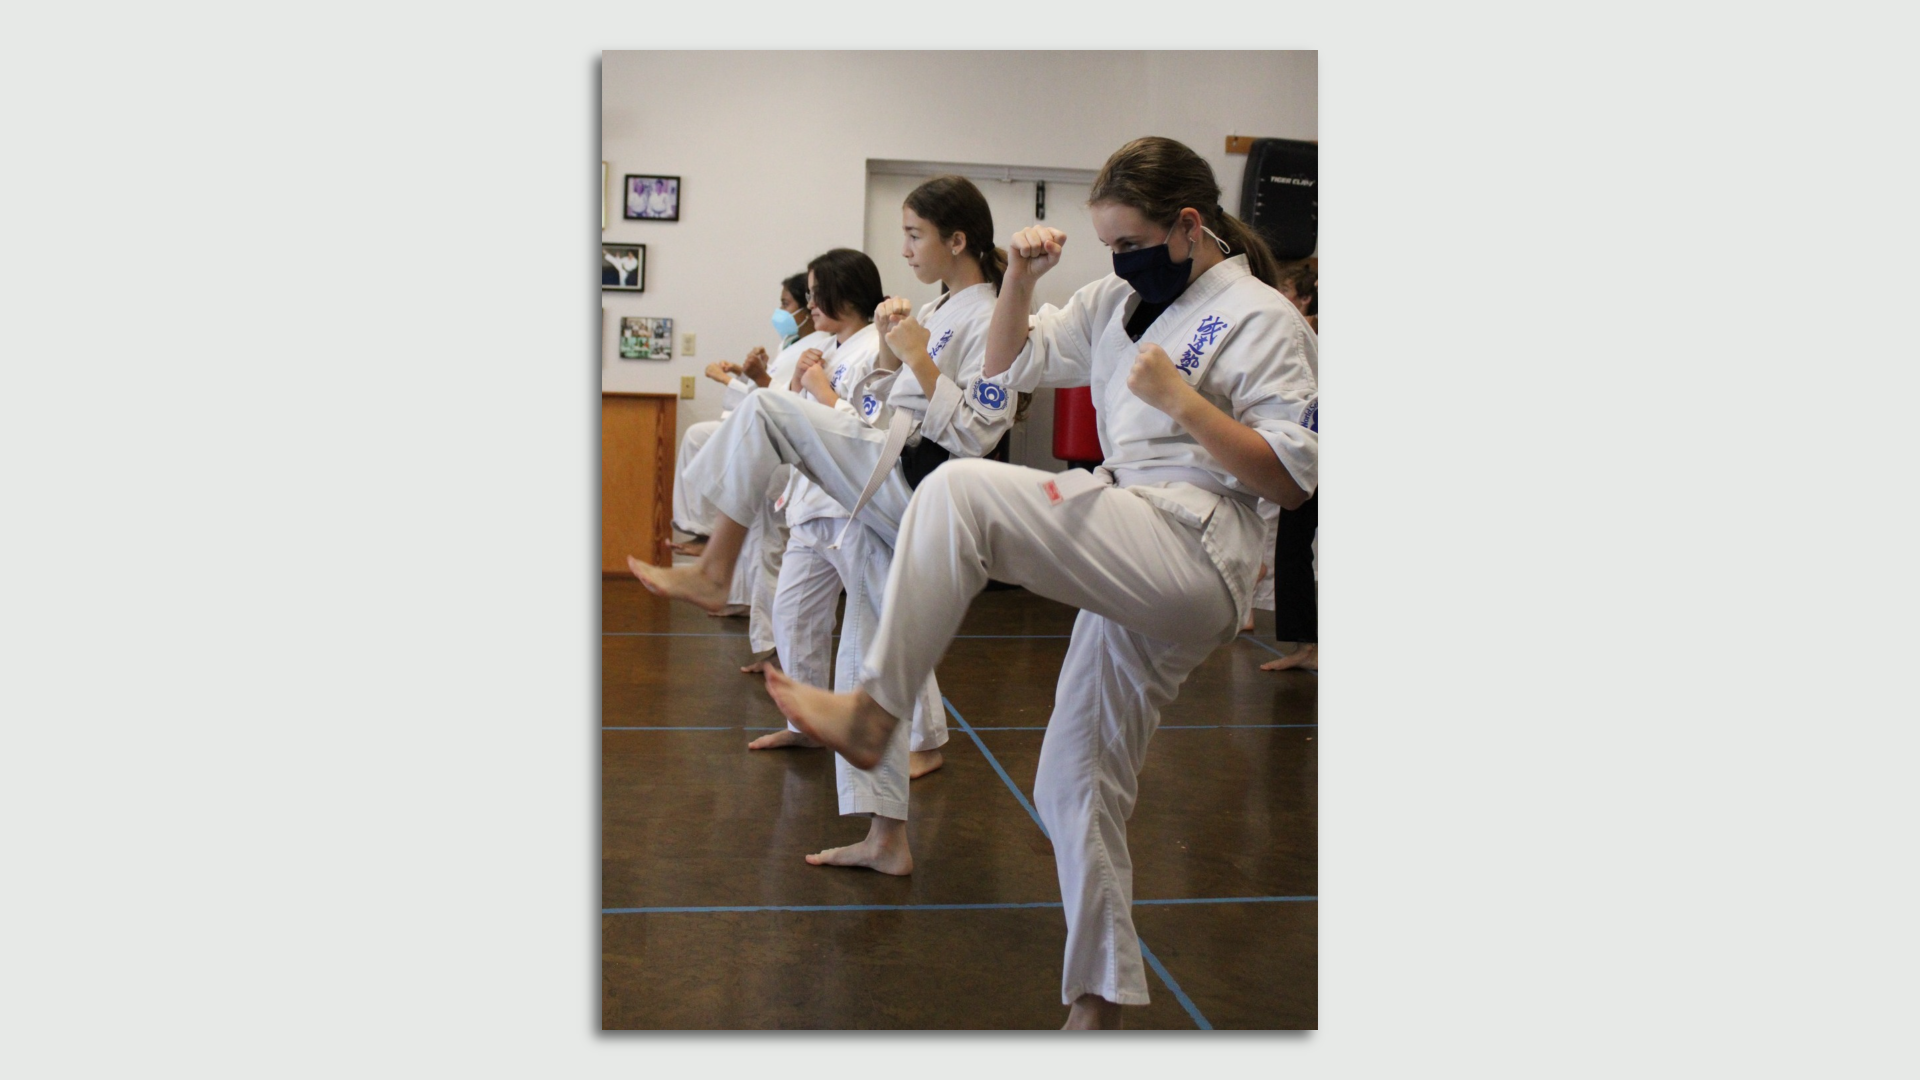 Students kicking at a martial arts studio.